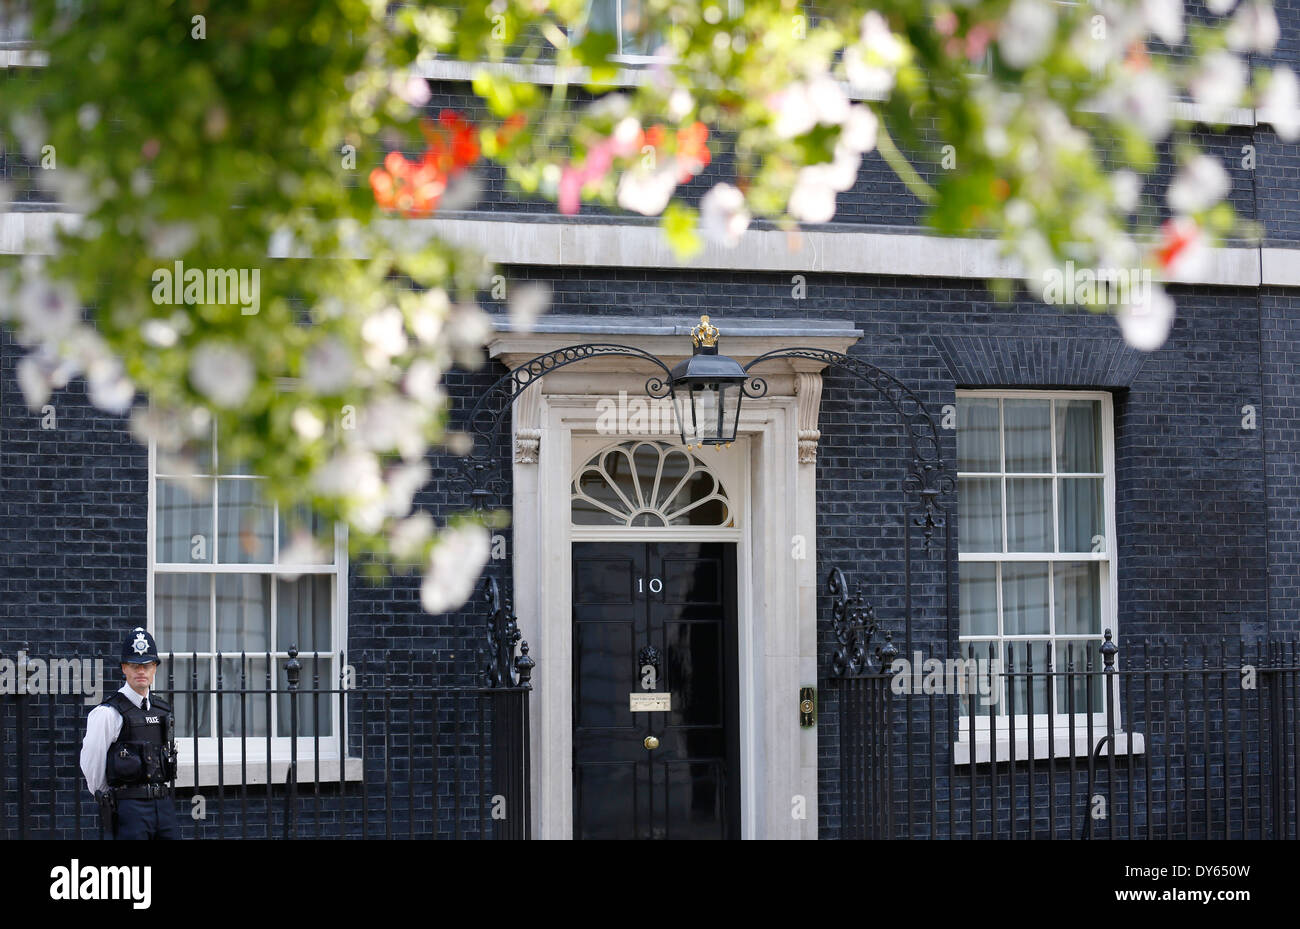 UK, Londres : Numéro 10 Downing Street, La Maison du Premier ministre britannique, est représenté sur une journée ensoleillée à Londres. Banque D'Images